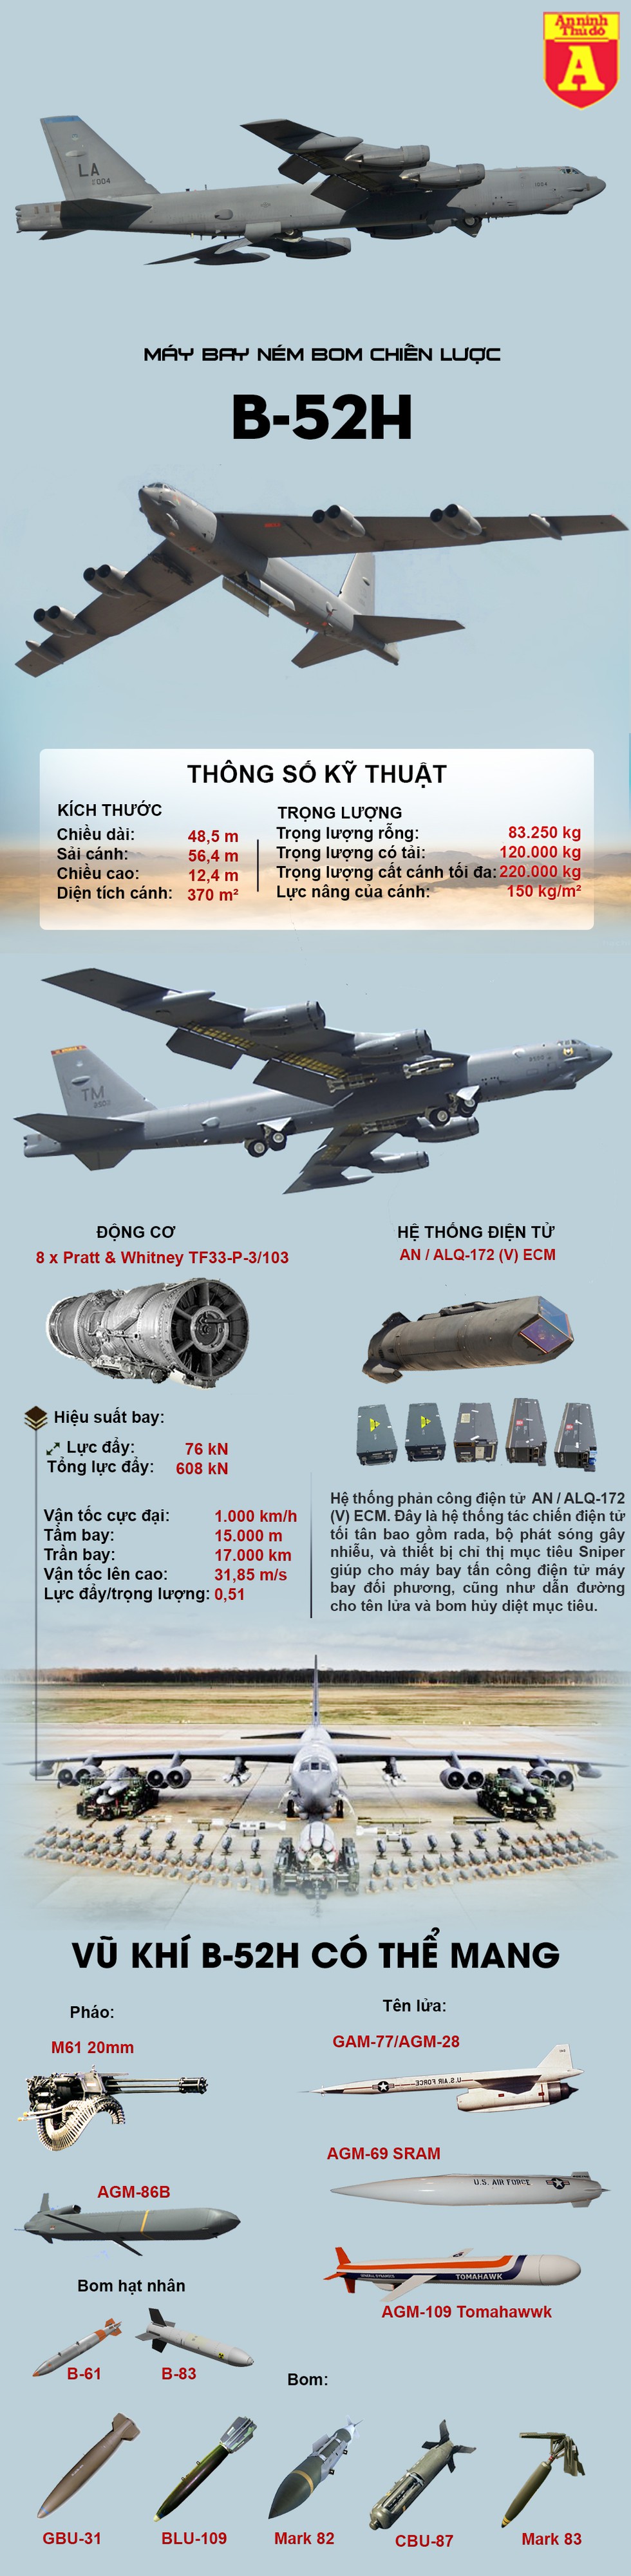 [Infographics] B-52 rơi linh kiện khi bay cổ vũ y bác sĩ Mỹ trong đại dịch Covid-19 - Ảnh 1